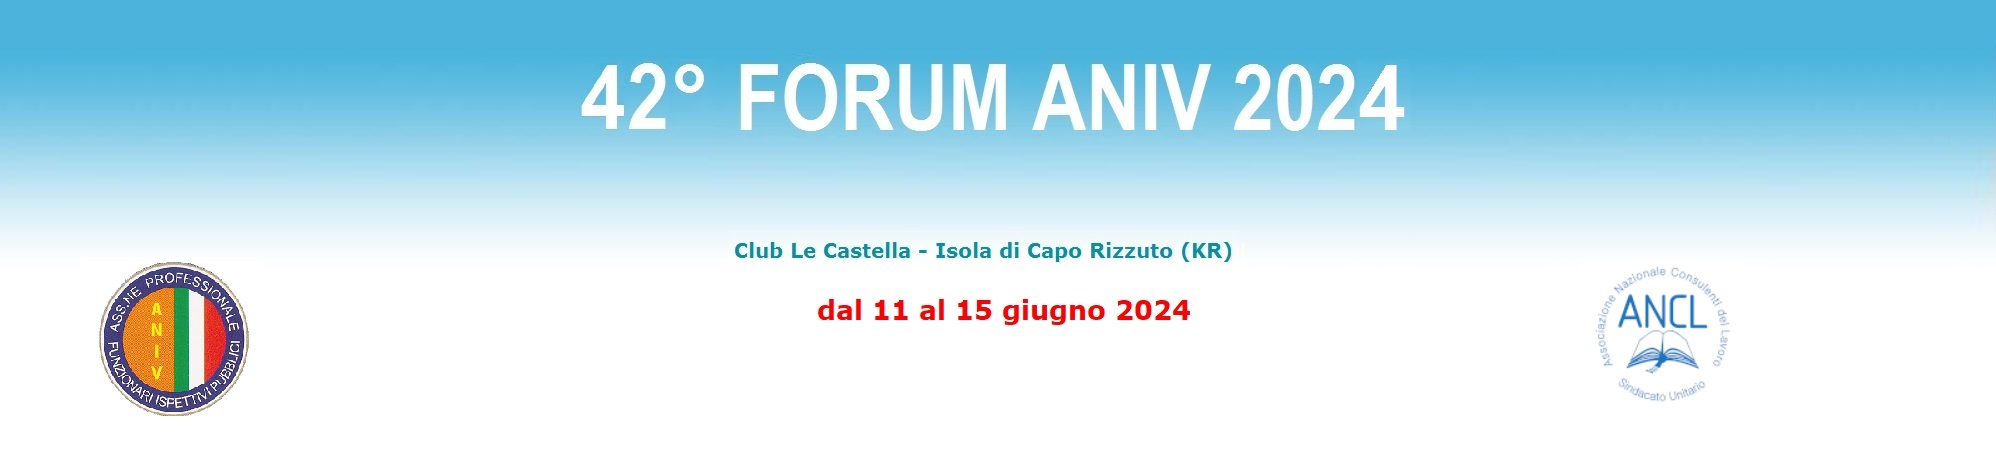 banner forum 2020